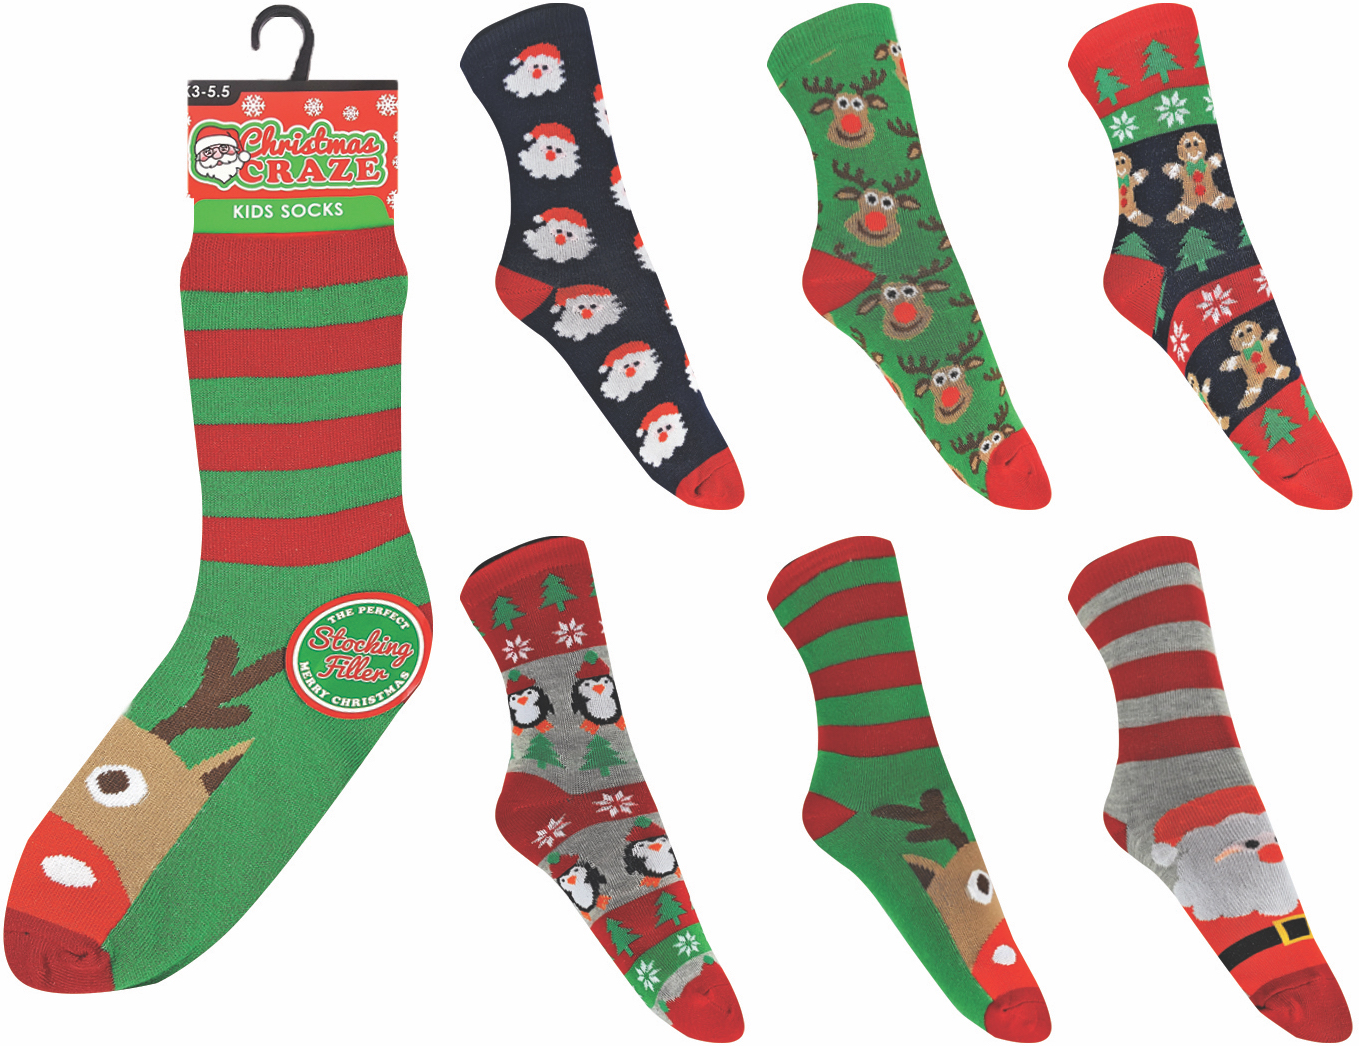 Wholesale Children's Christmas Value Ankle Socks | Wholesaler Xmas ...